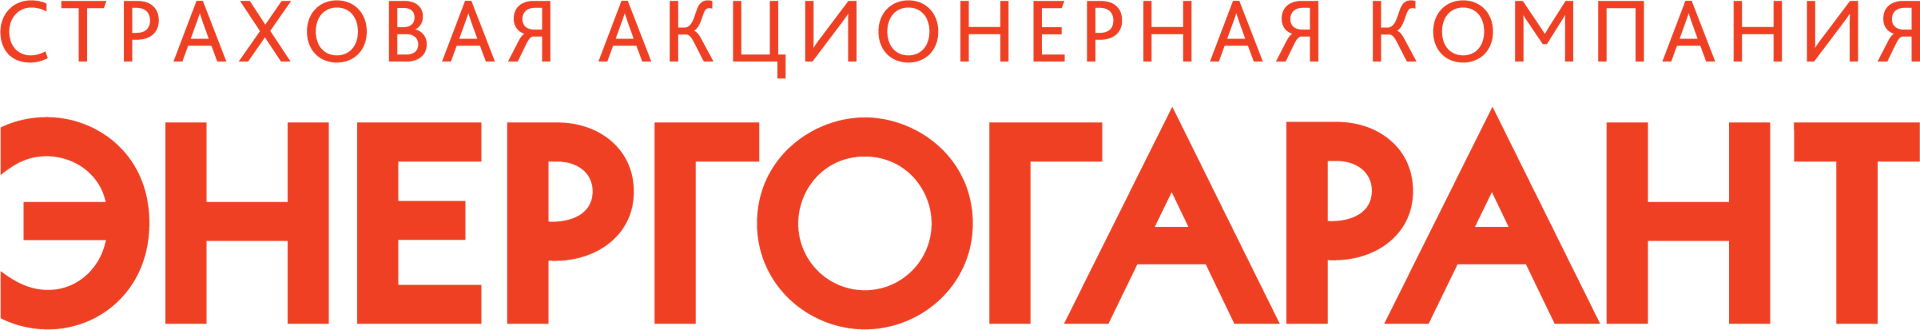 www.rshb.ru